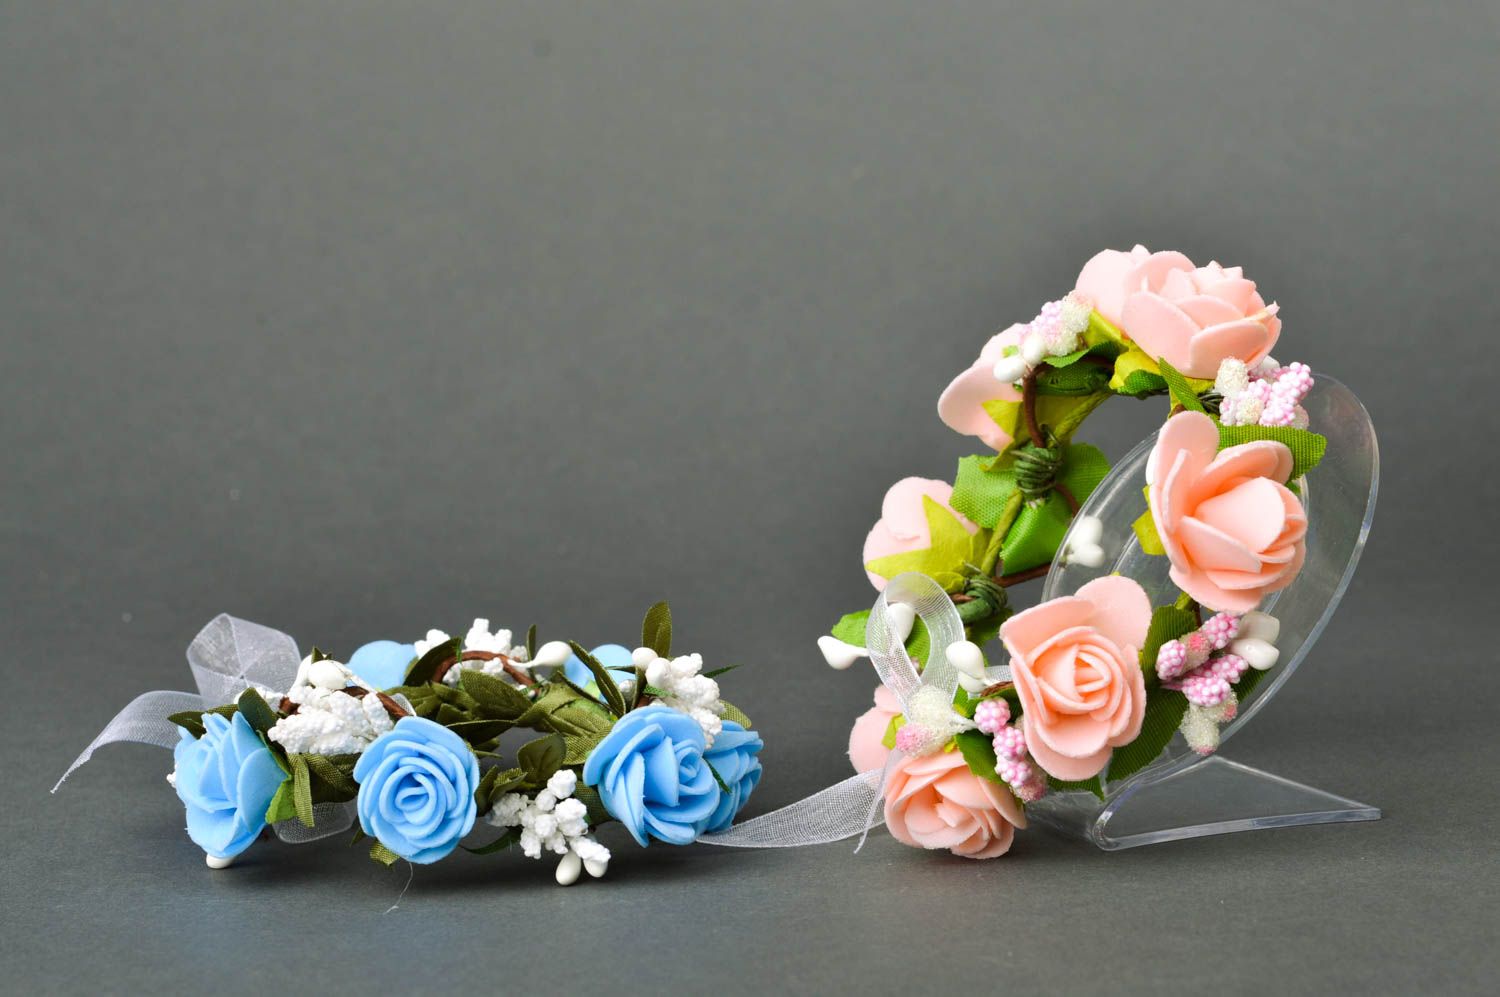 Handmade wrist bracelet flower bracelets designer accessories for women photo 2